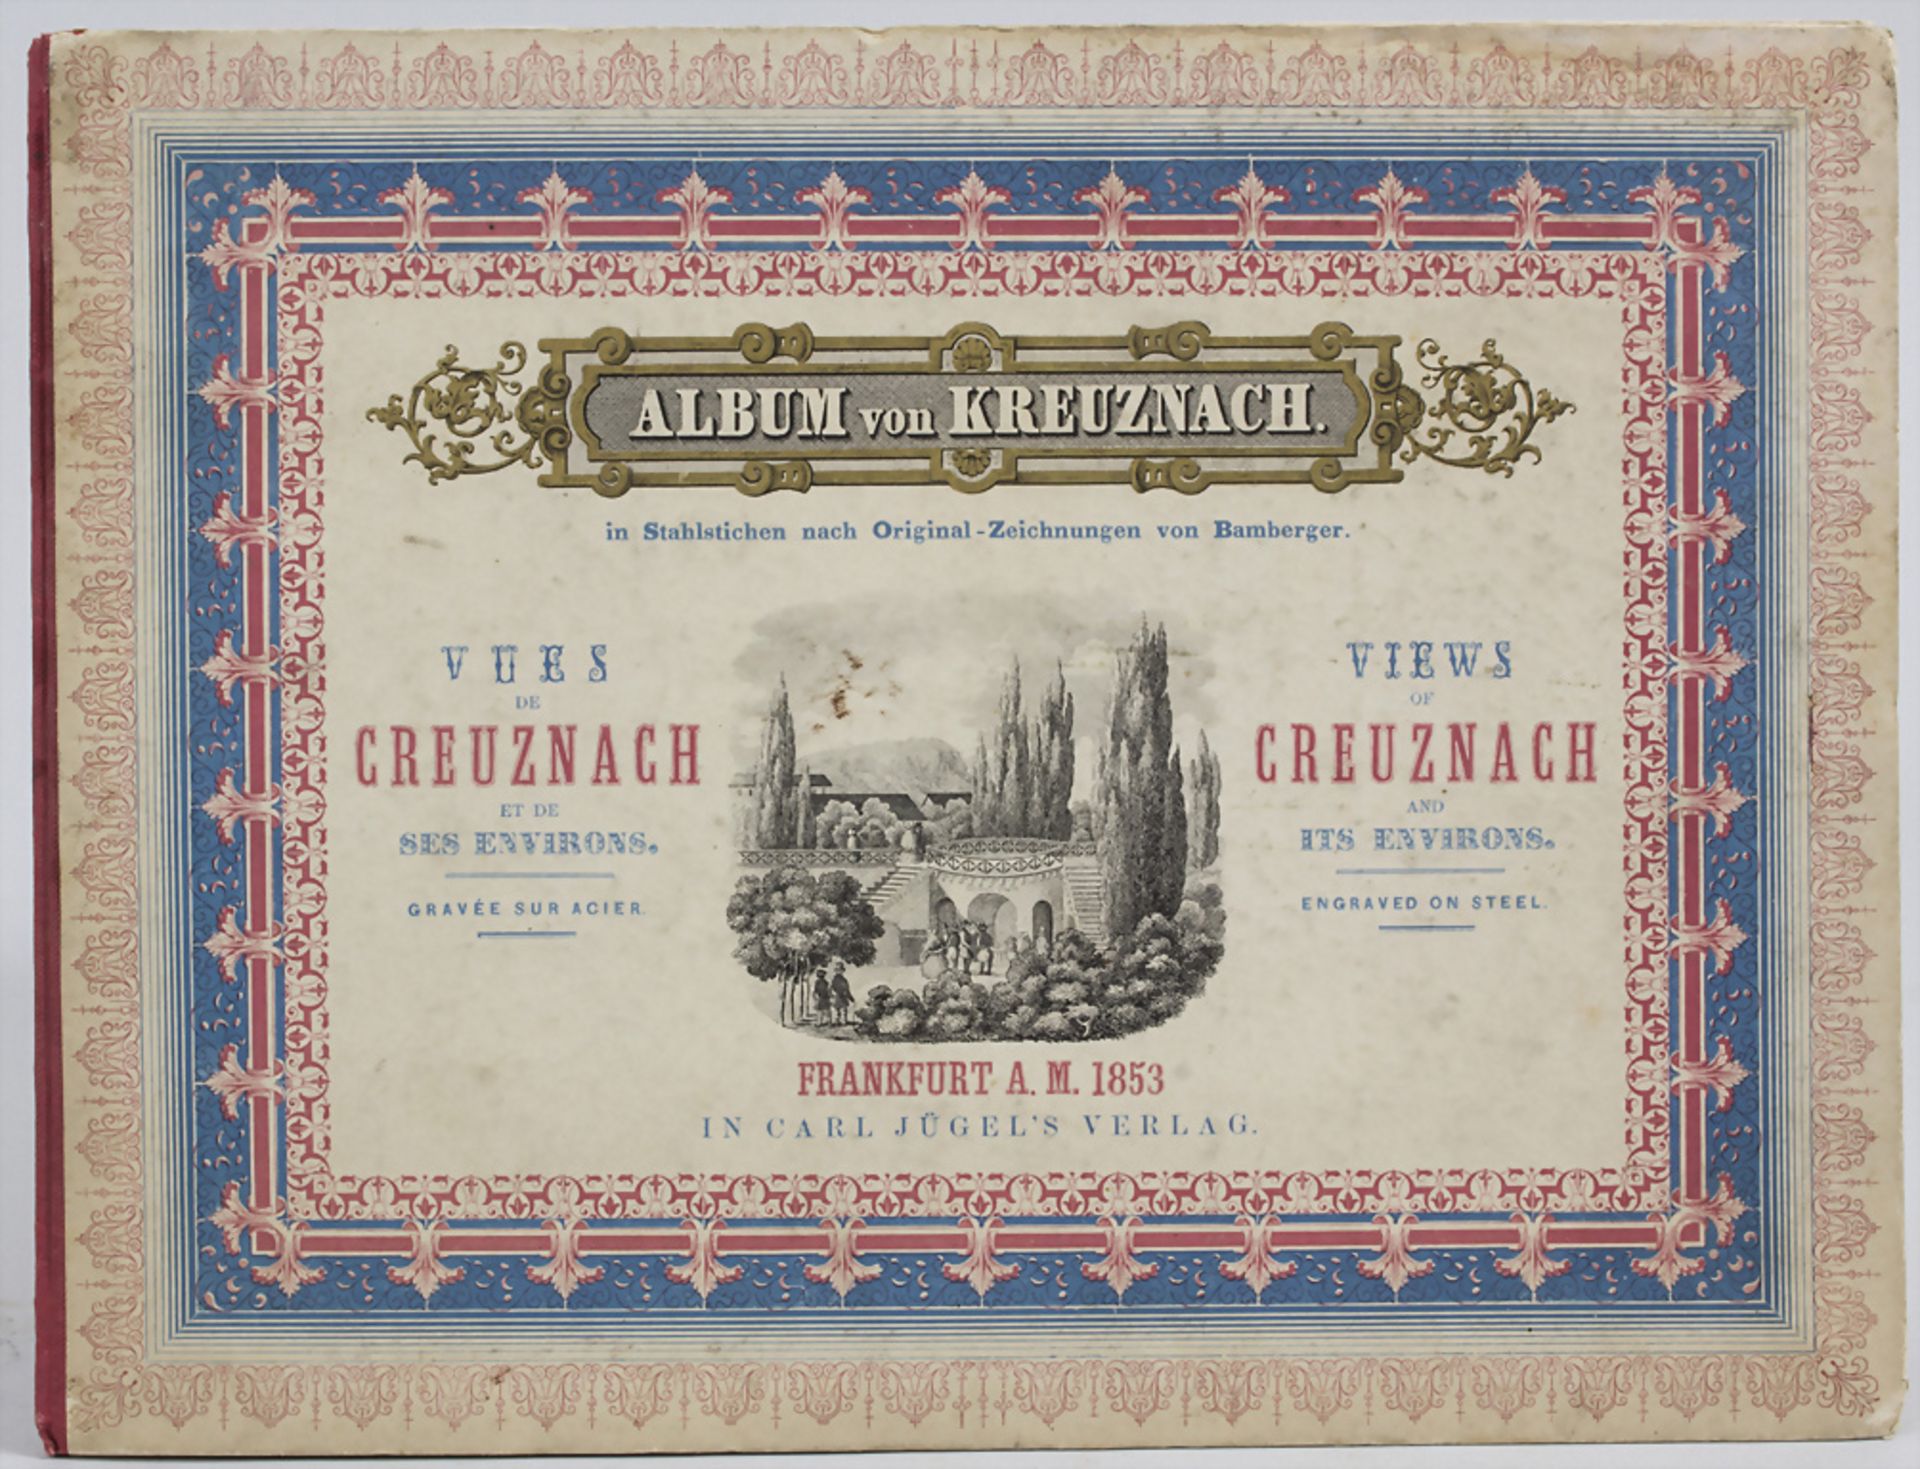 'Album von Kreuznach', Frankfurt a. Main, 1853